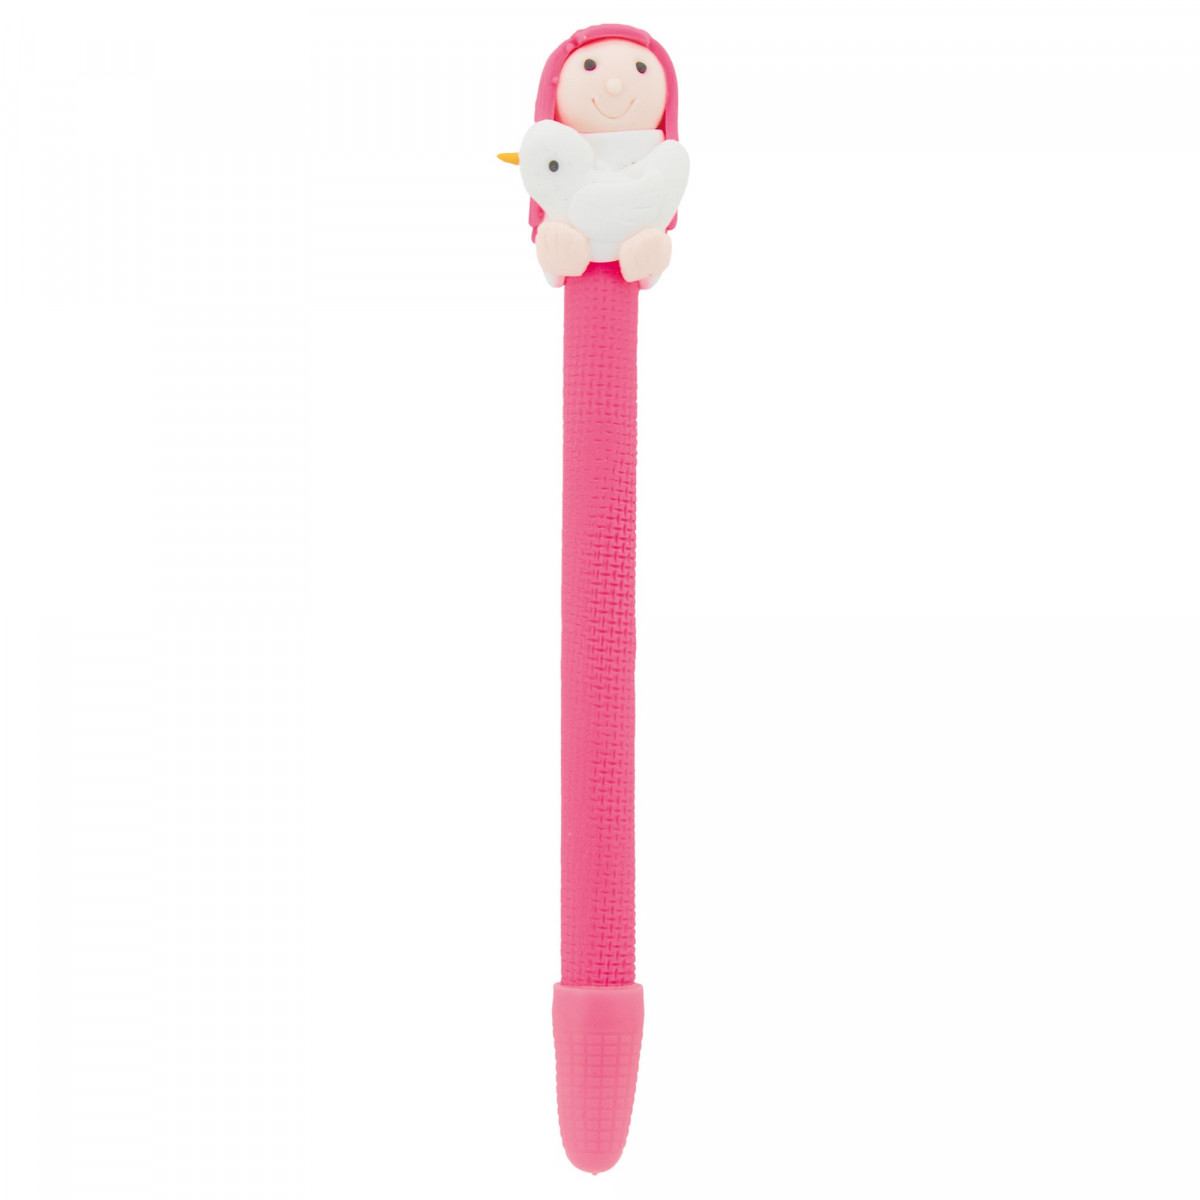 Bolígrafo rosa comunión niña